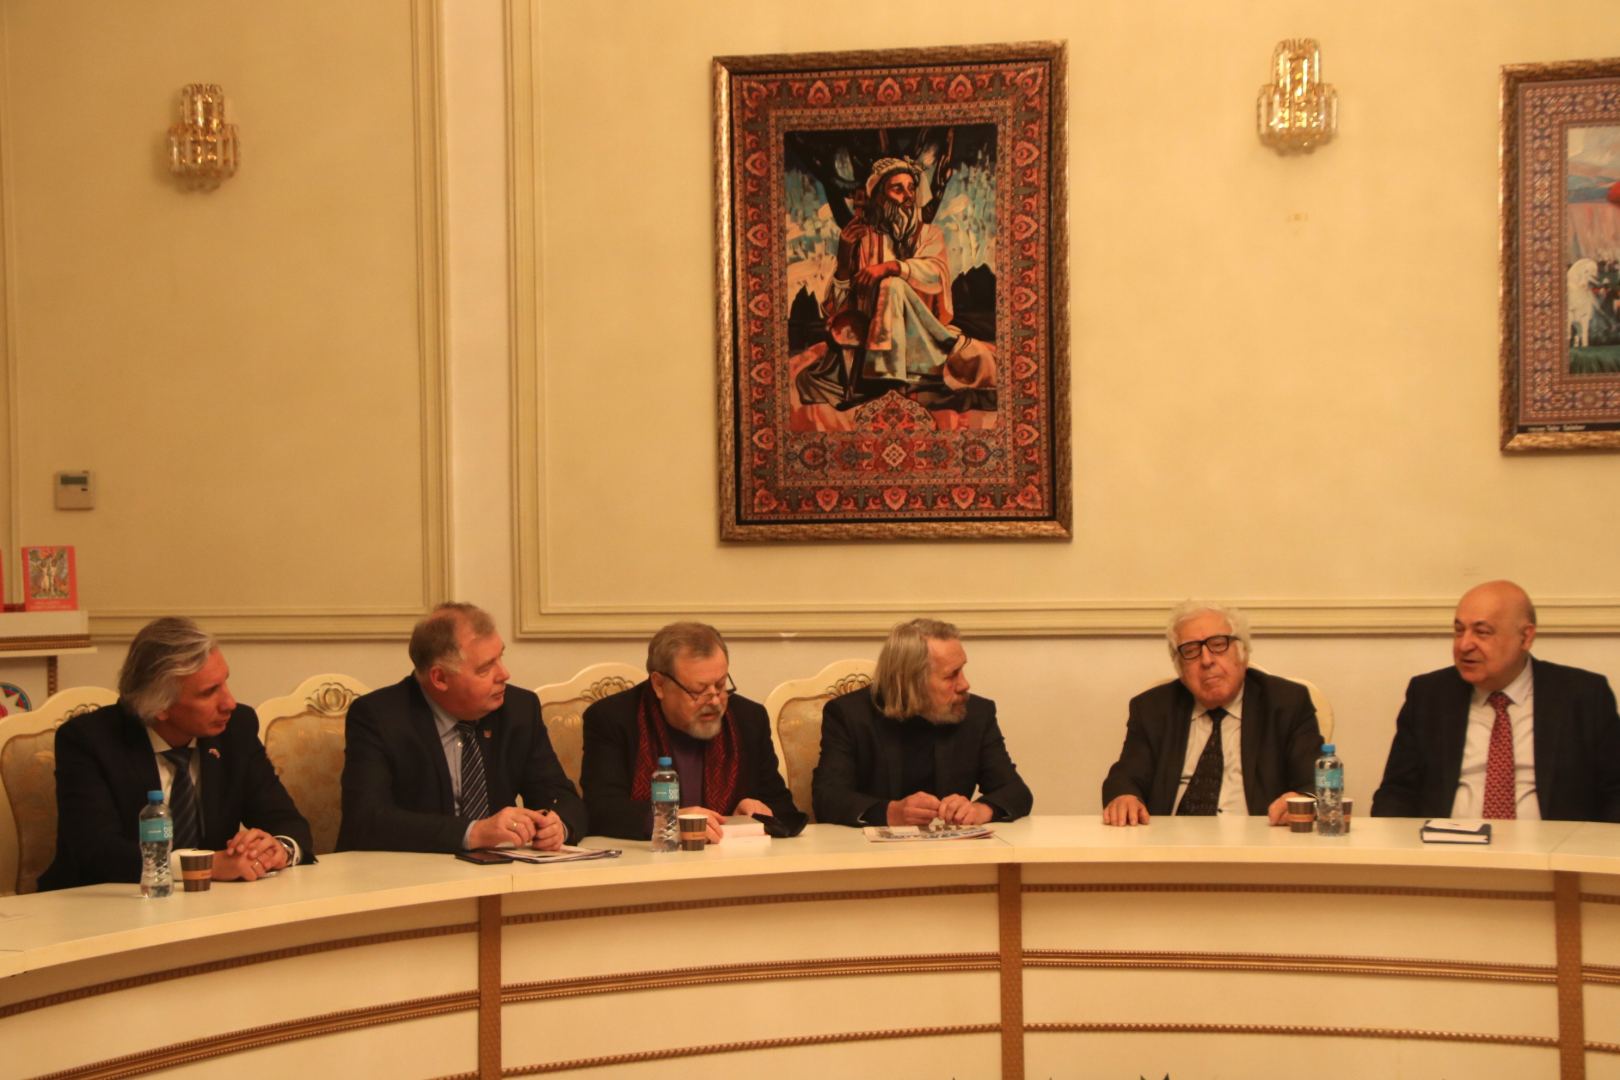 В Баку состоялась творческая встреча писателей Азербайджана и России (ФОТО)